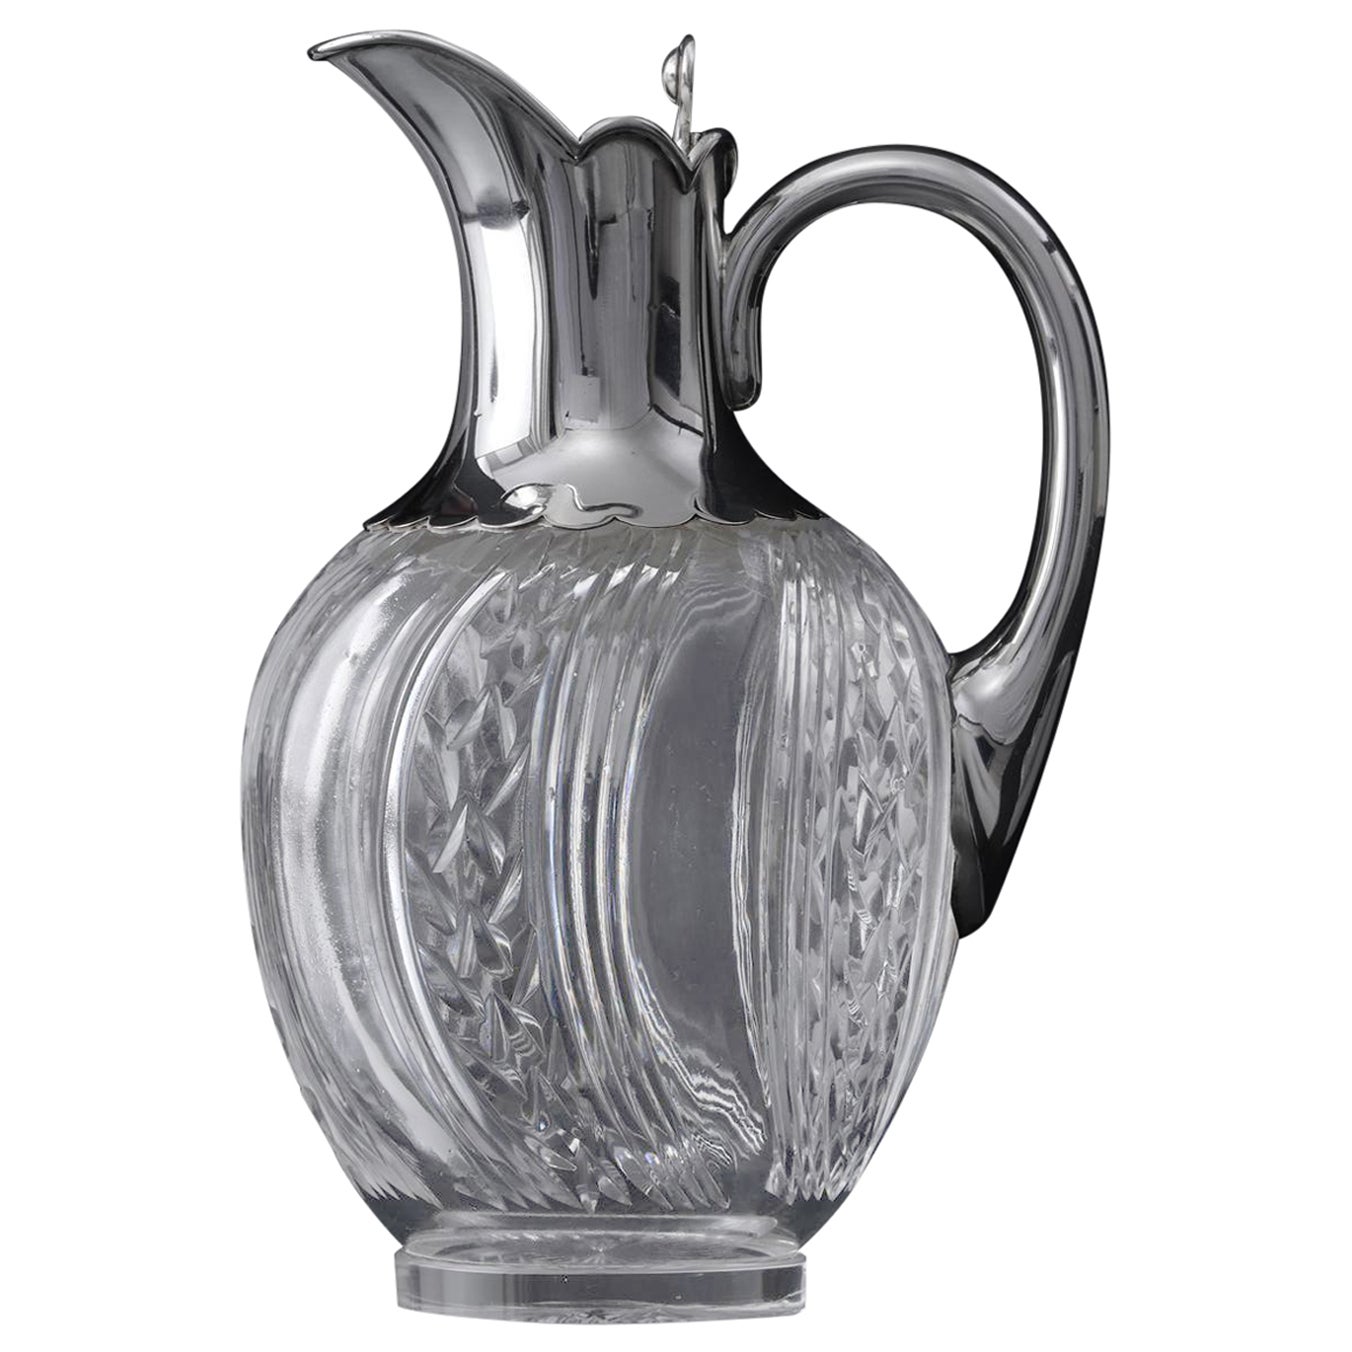 Victorian silver & crystal wine jug